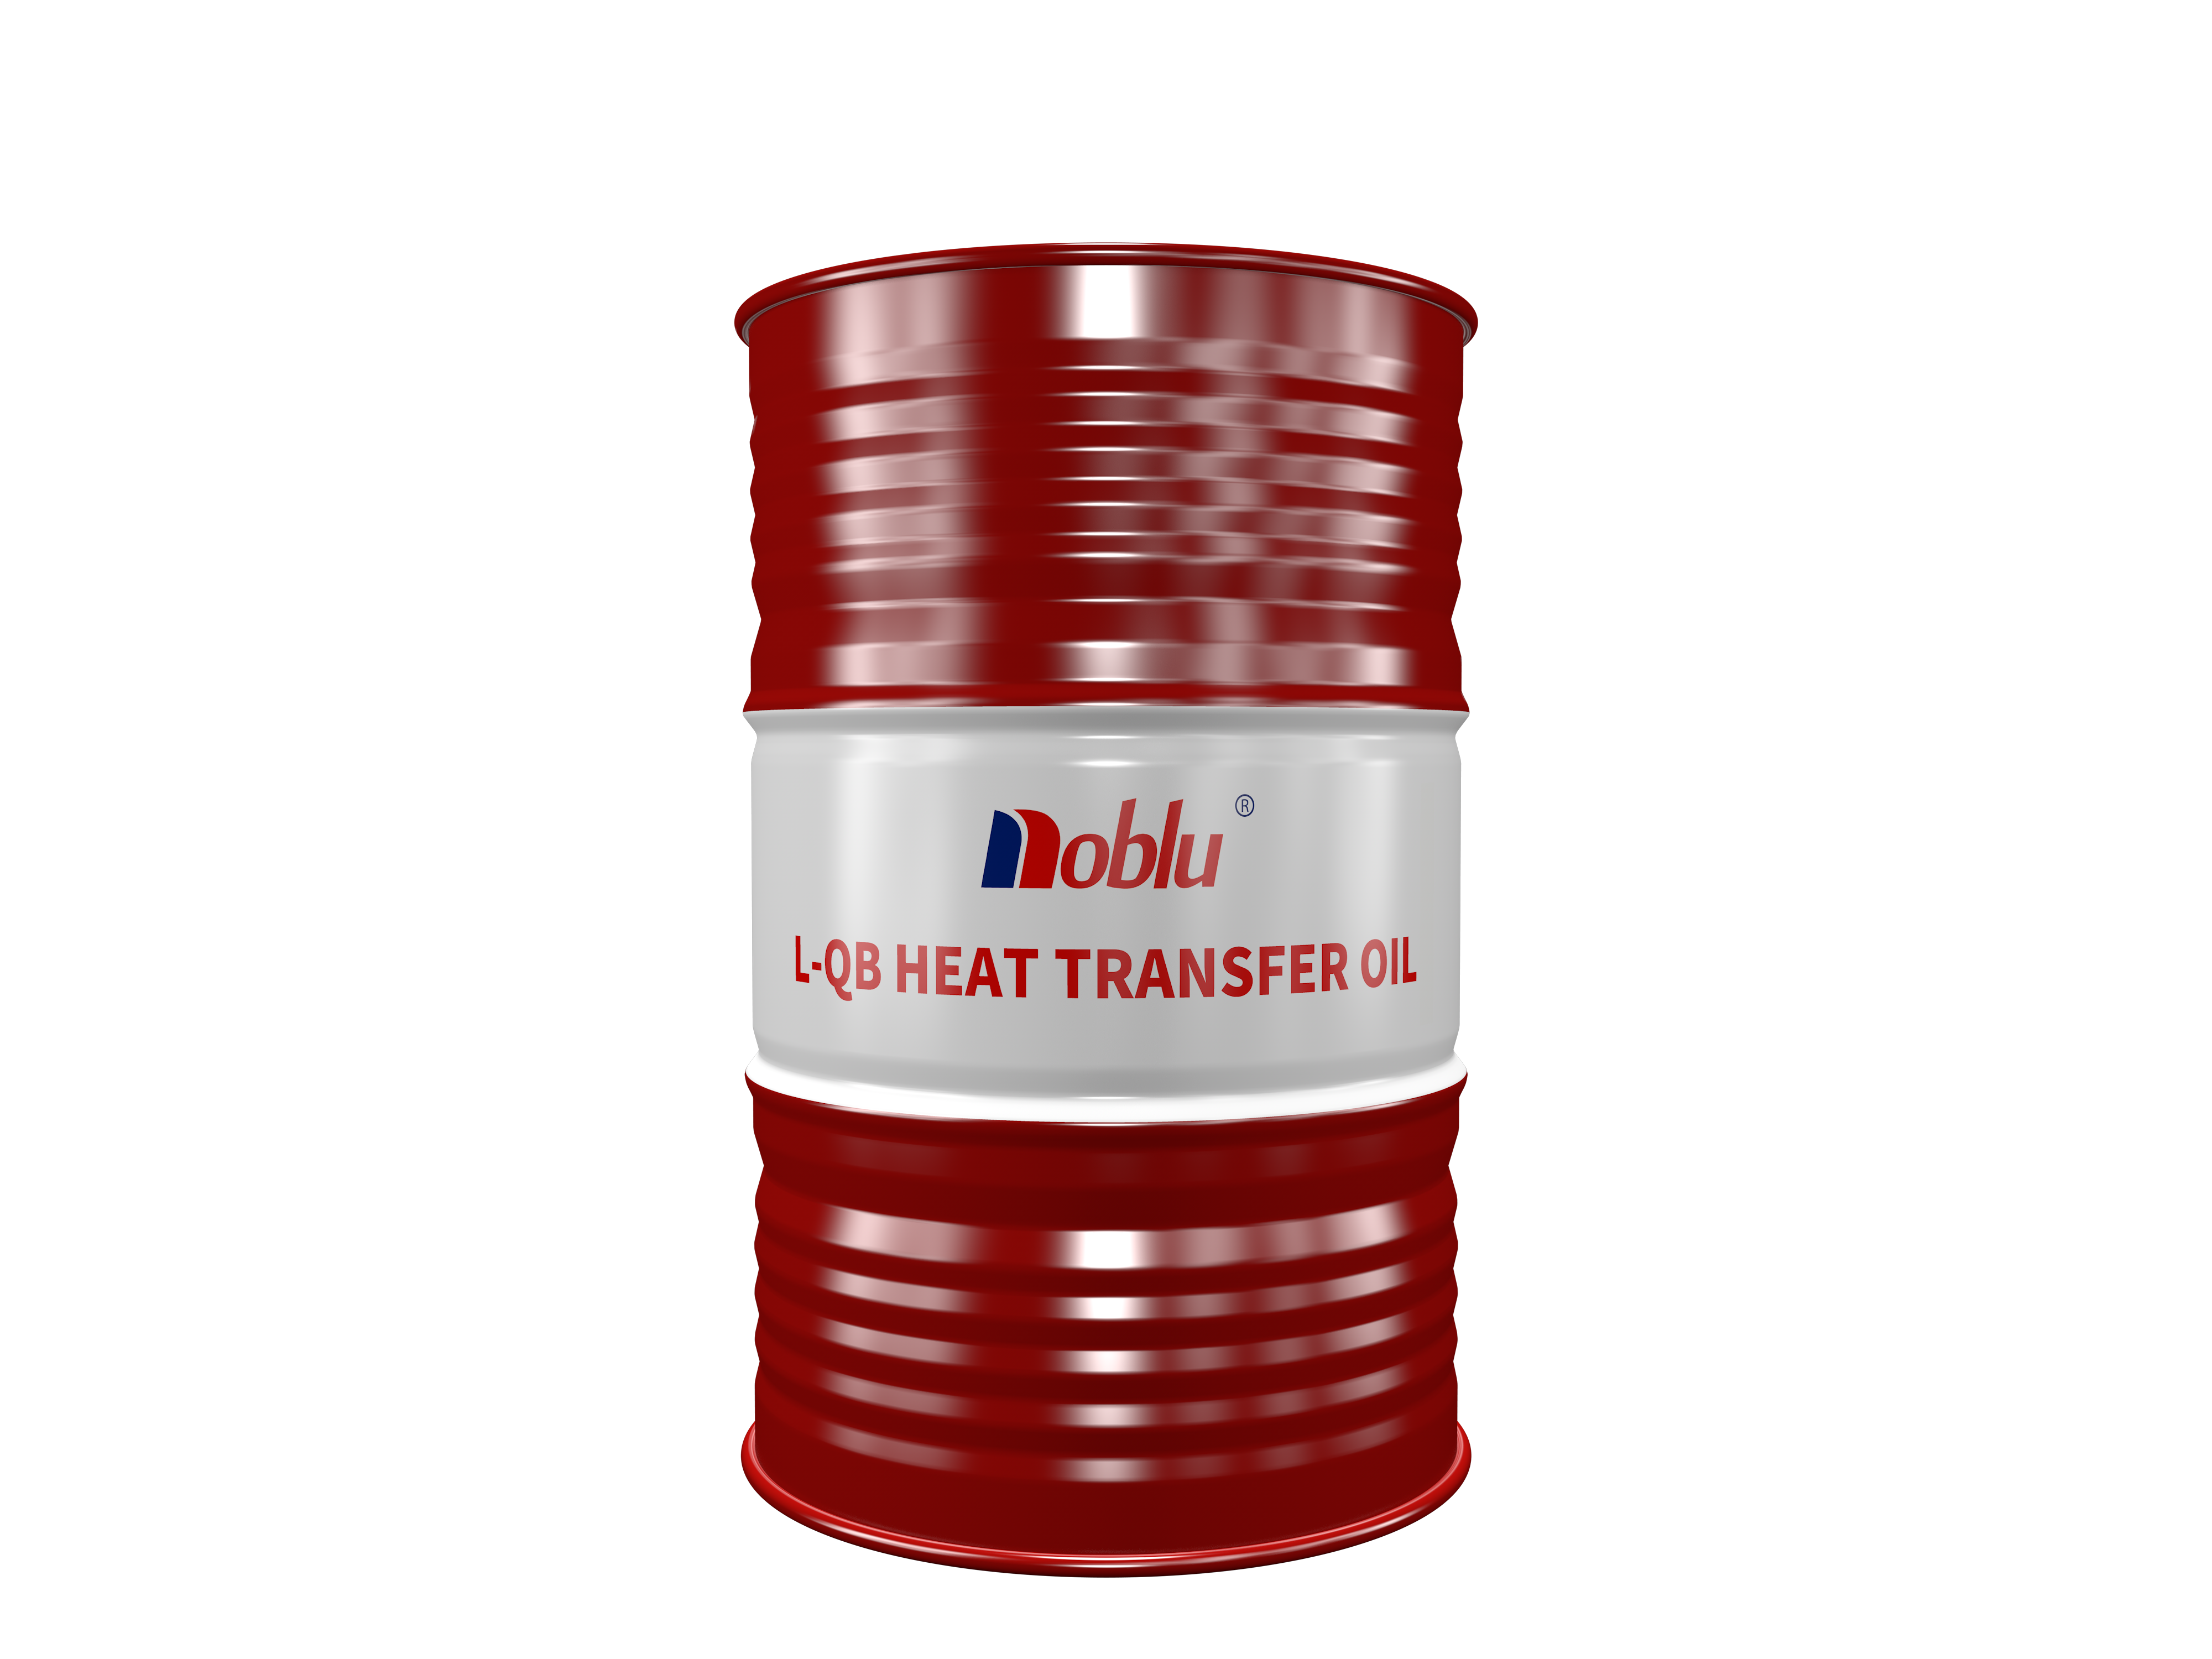 L-QB heat transfer oil